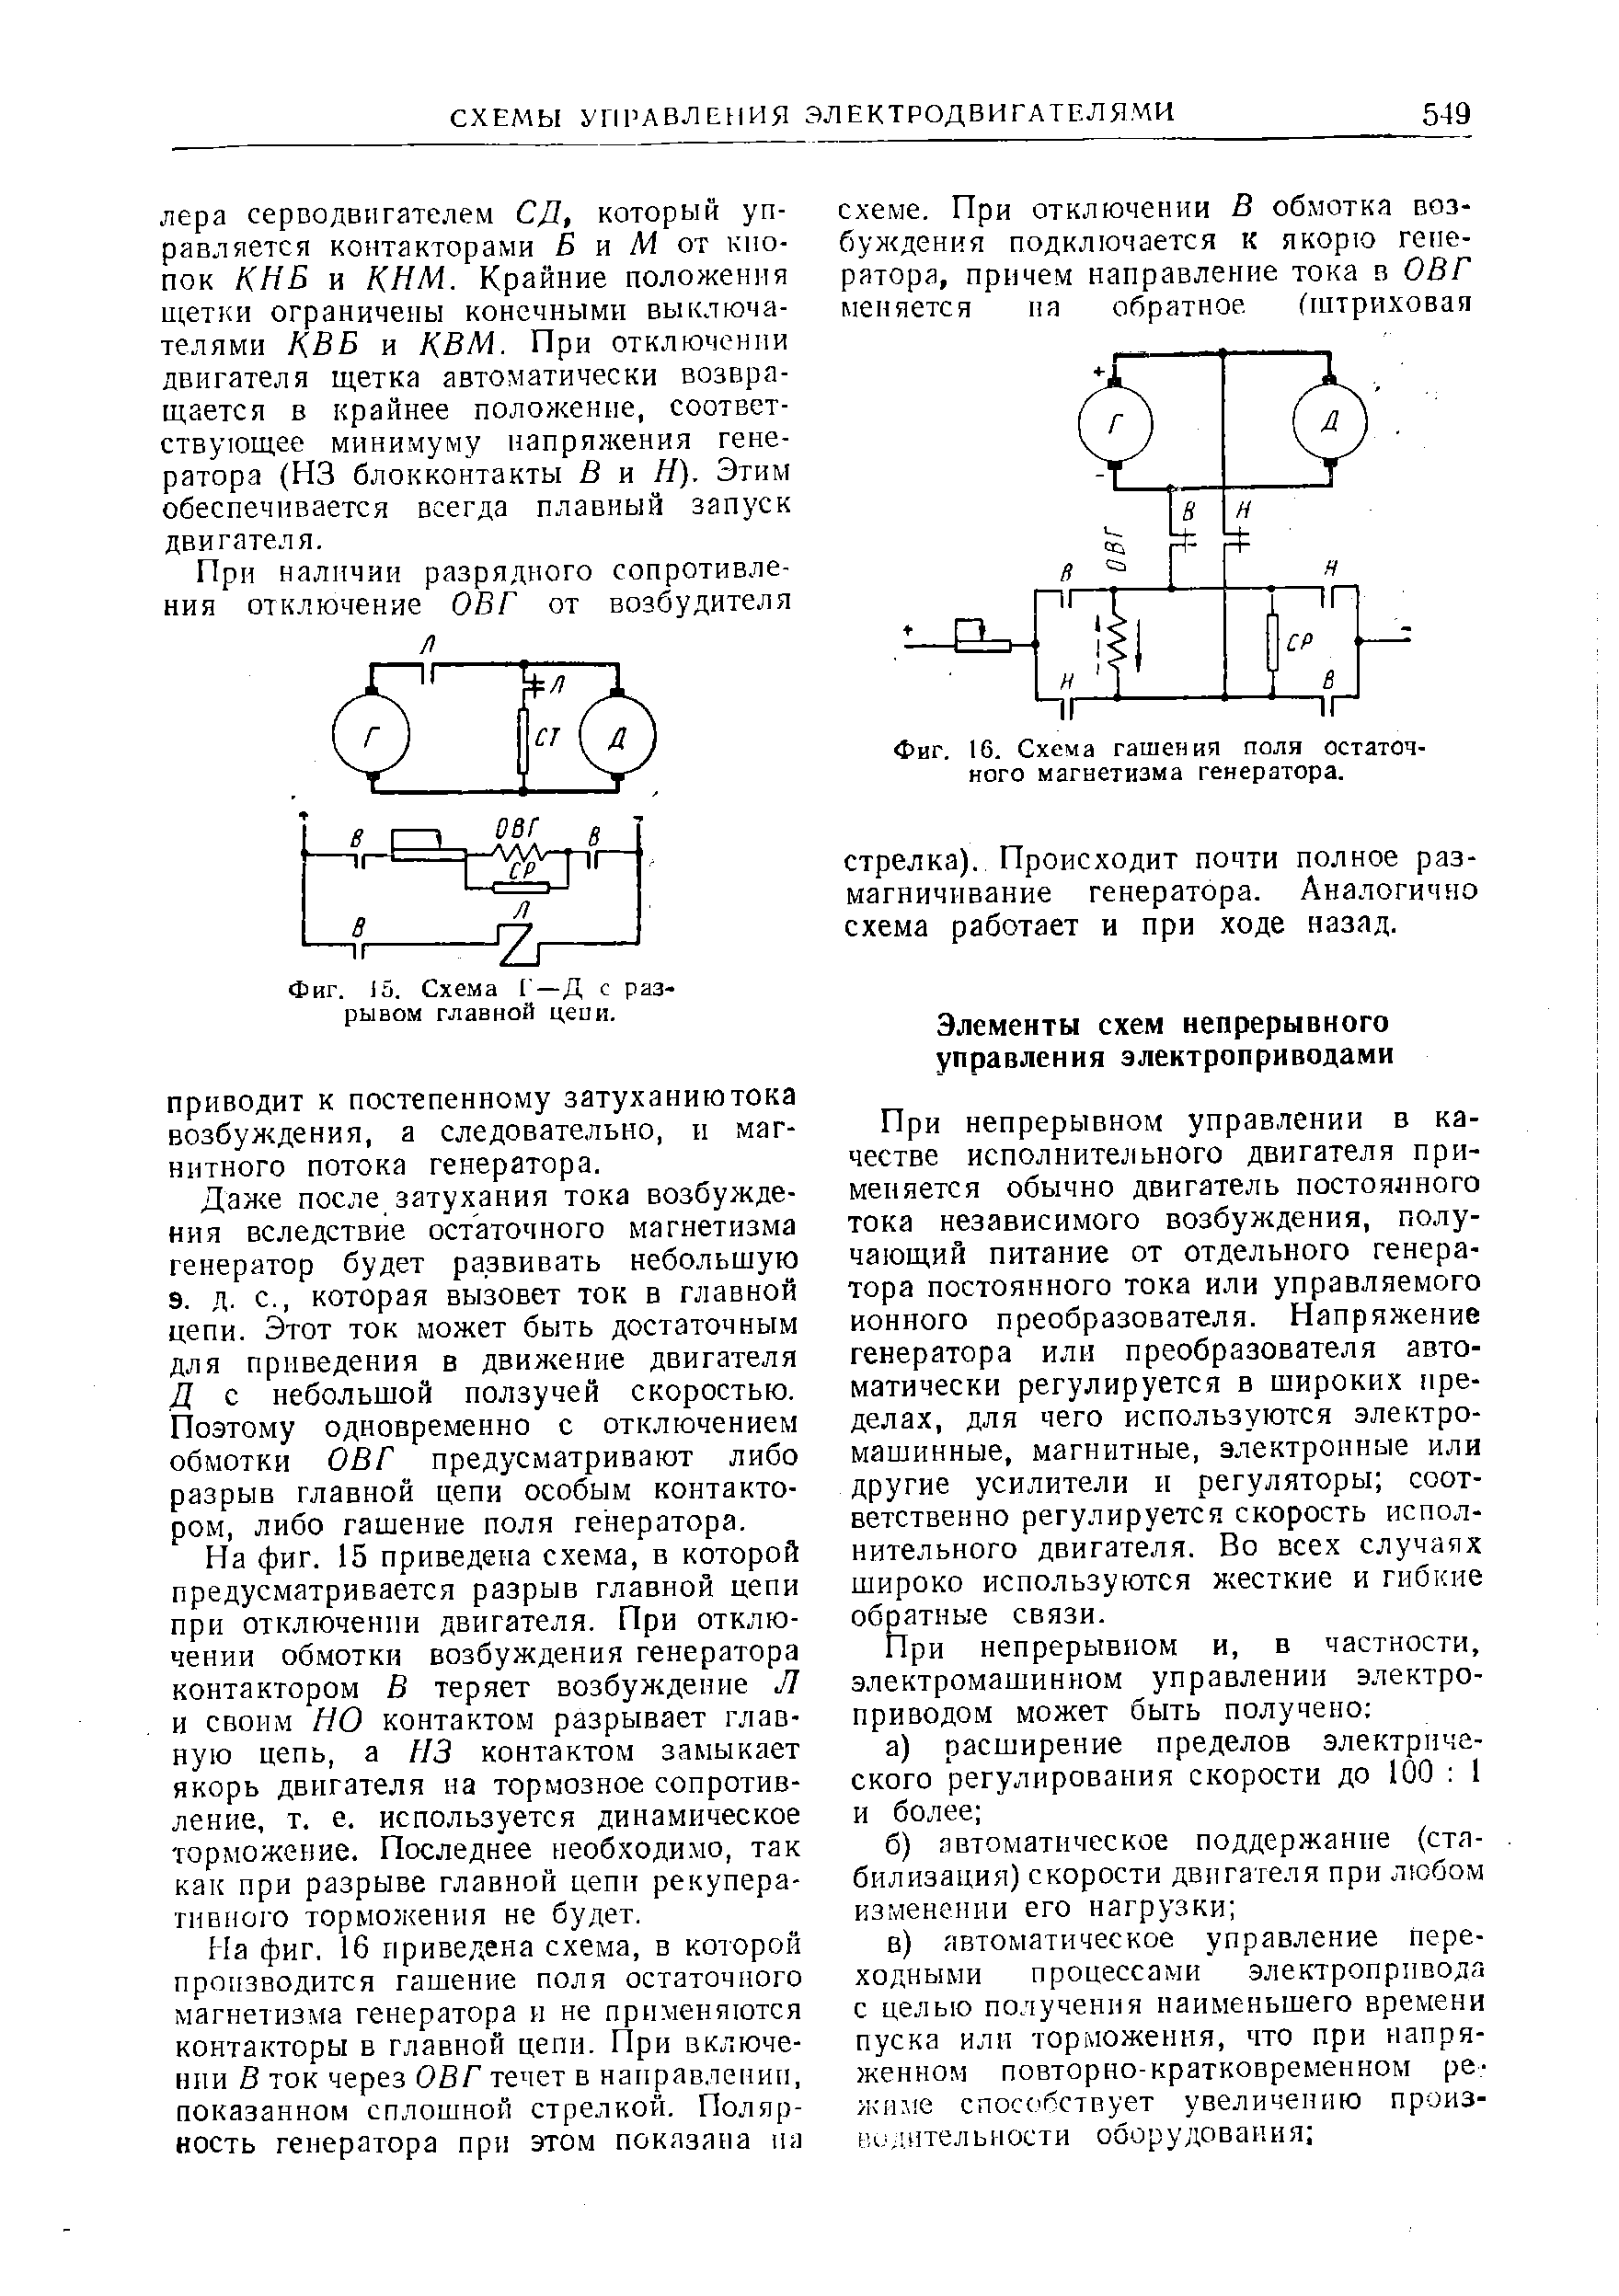 Фиг. 16, Схема гашения поля остаточного магнетизма генератора.
